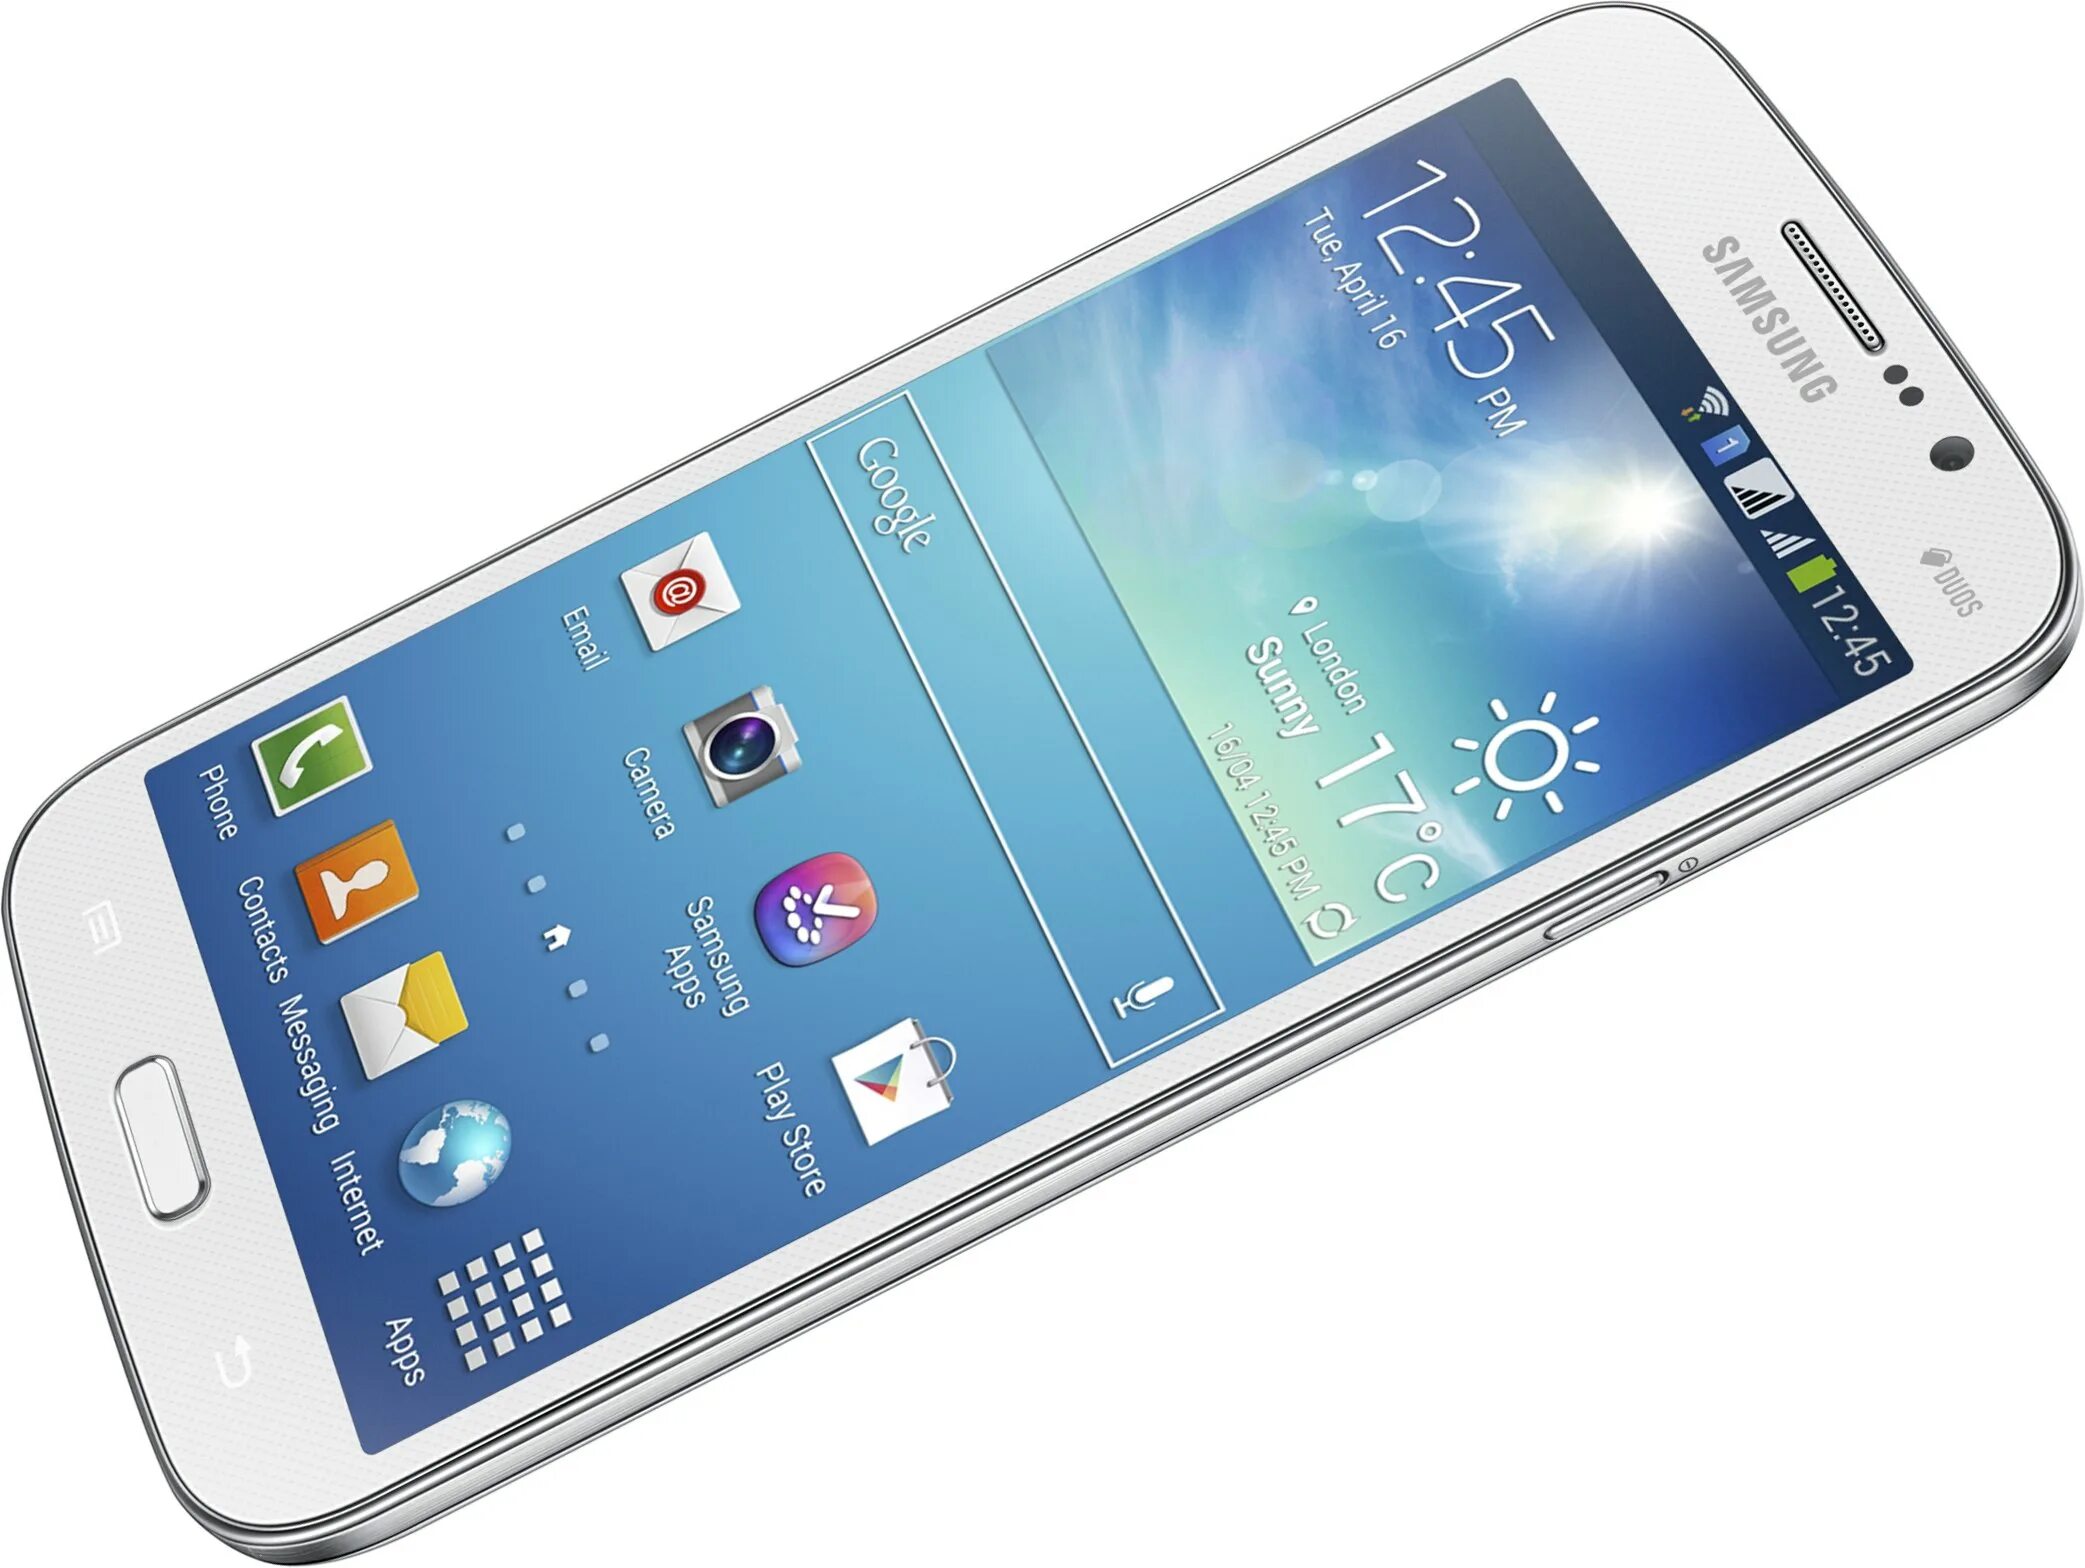 Samsung galaxy 34. Samsung Mega i9152. Samsung Galaxy Mega 5.8. Samsung Galaxy gt i9152. Samsung Galaxy Mega gt i9152.